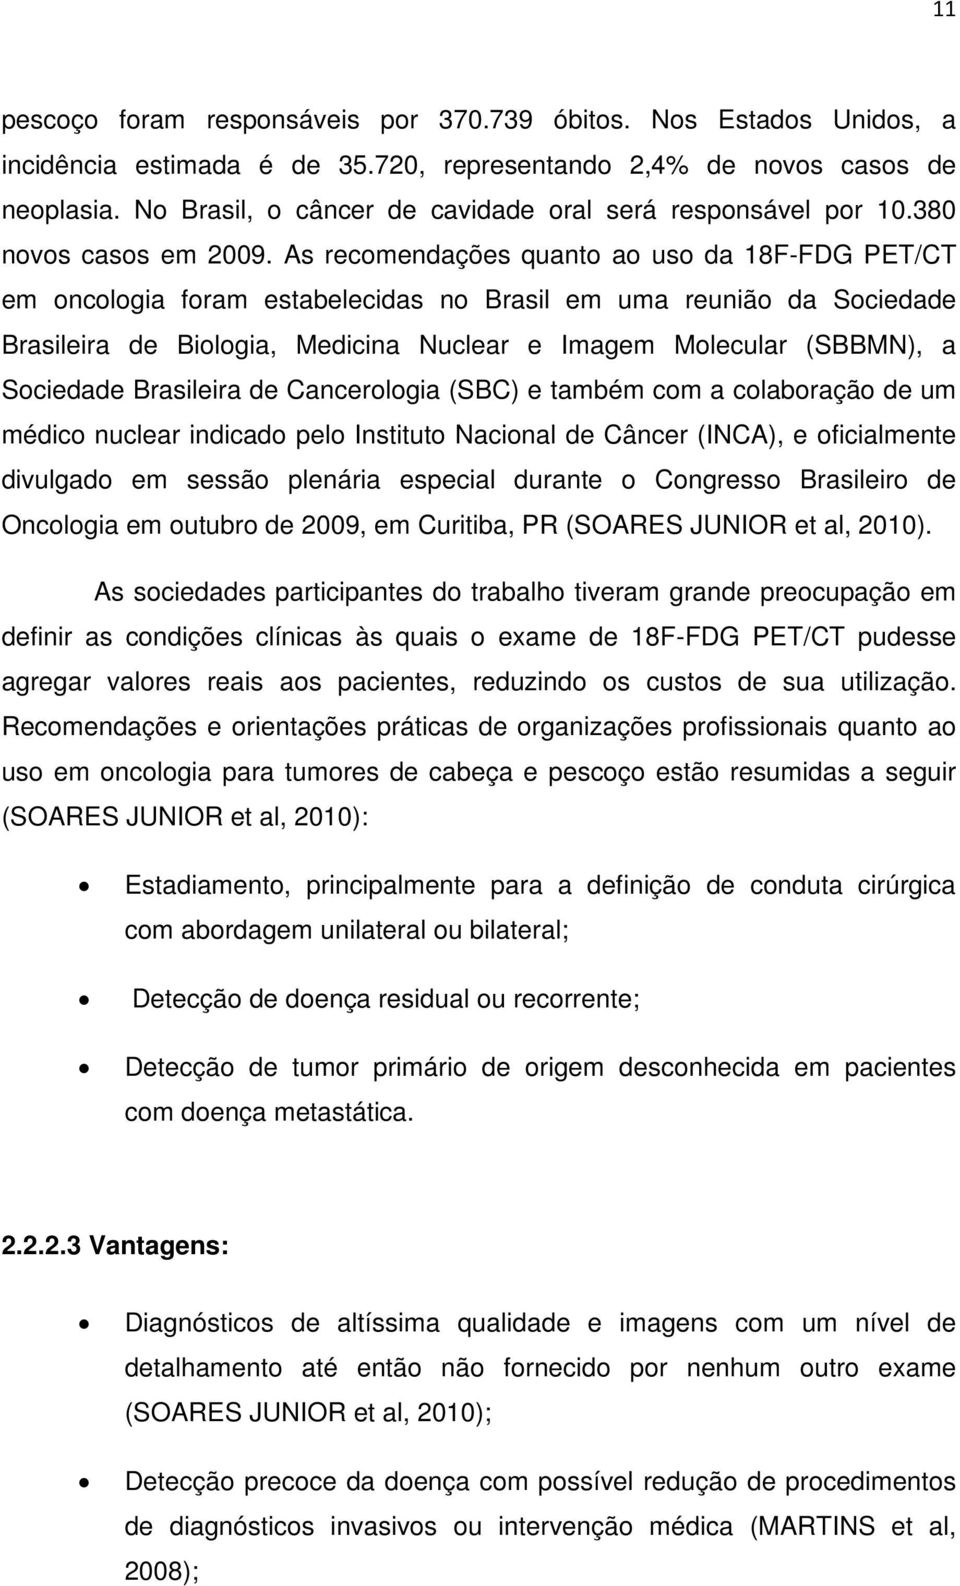 As recomendações quanto ao uso da 18F-FDG PET/CT em oncologia foram estabelecidas no Brasil em uma reunião da Sociedade Brasileira de Biologia, Medicina Nuclear e Imagem Molecular (SBBMN), a